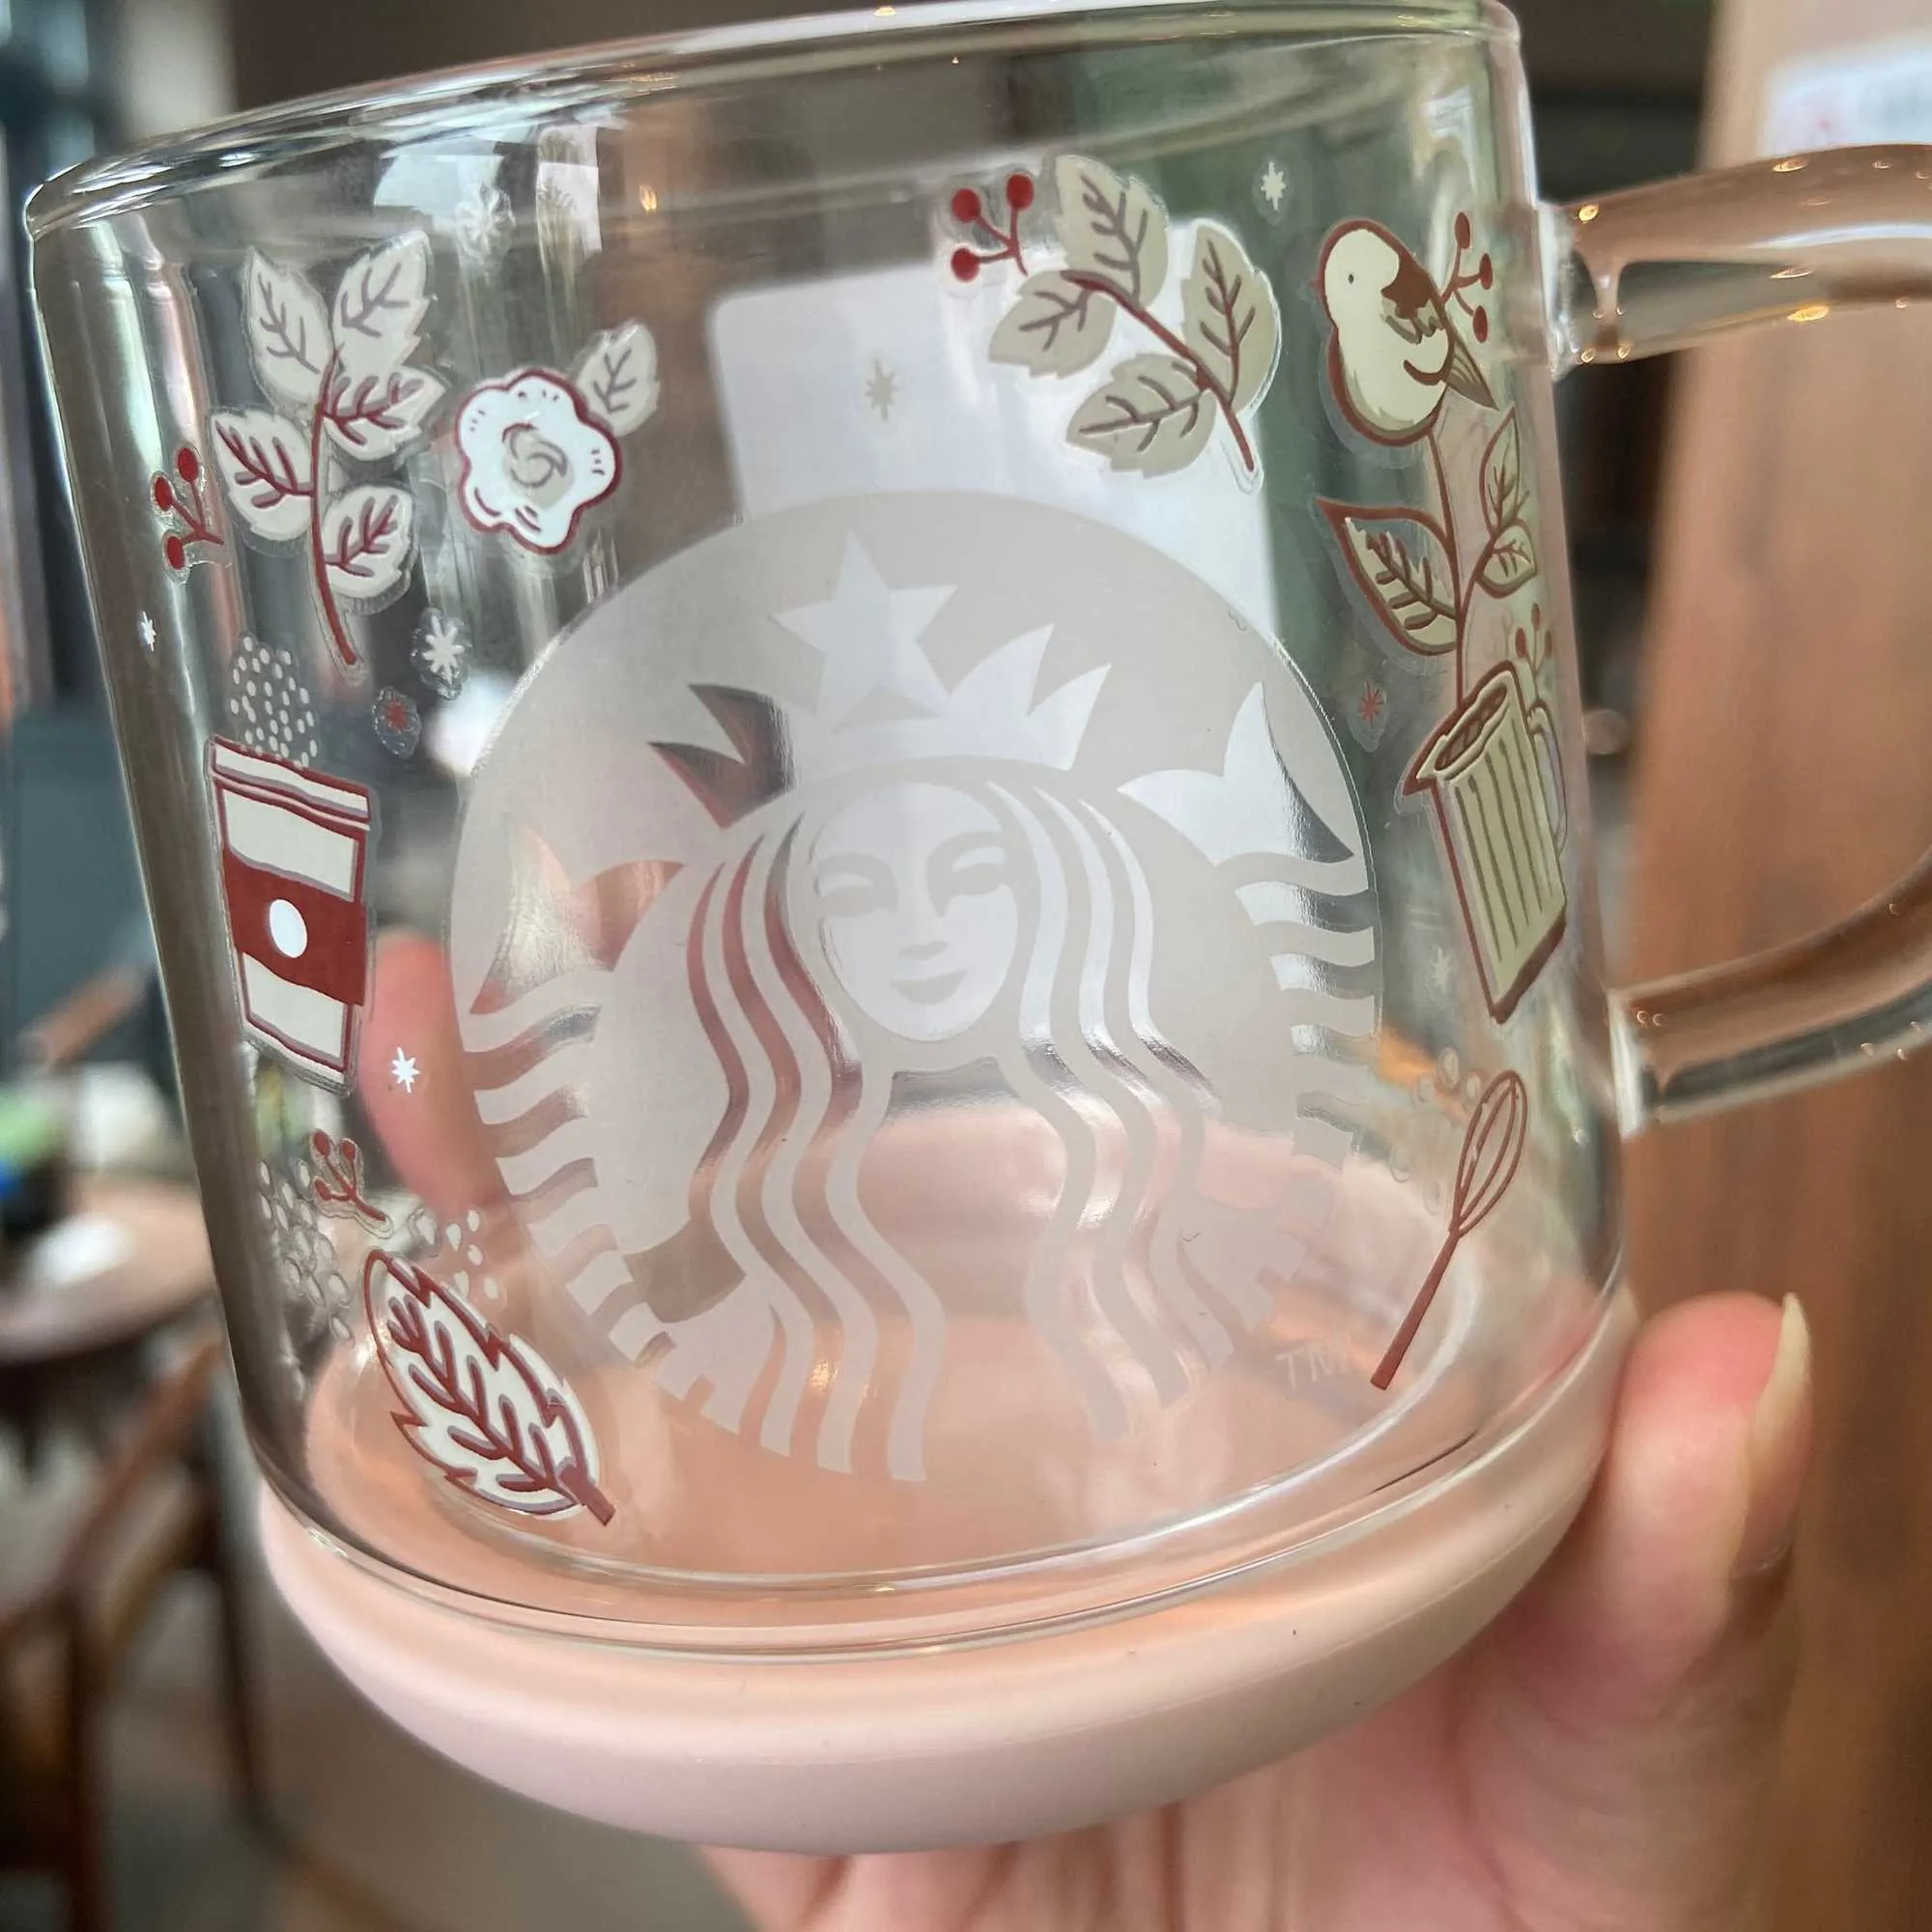 Starbucks tasse coréen amour oiseau fond en verre détachable pie tasse d'eau bureau tasse à café femme cadeau